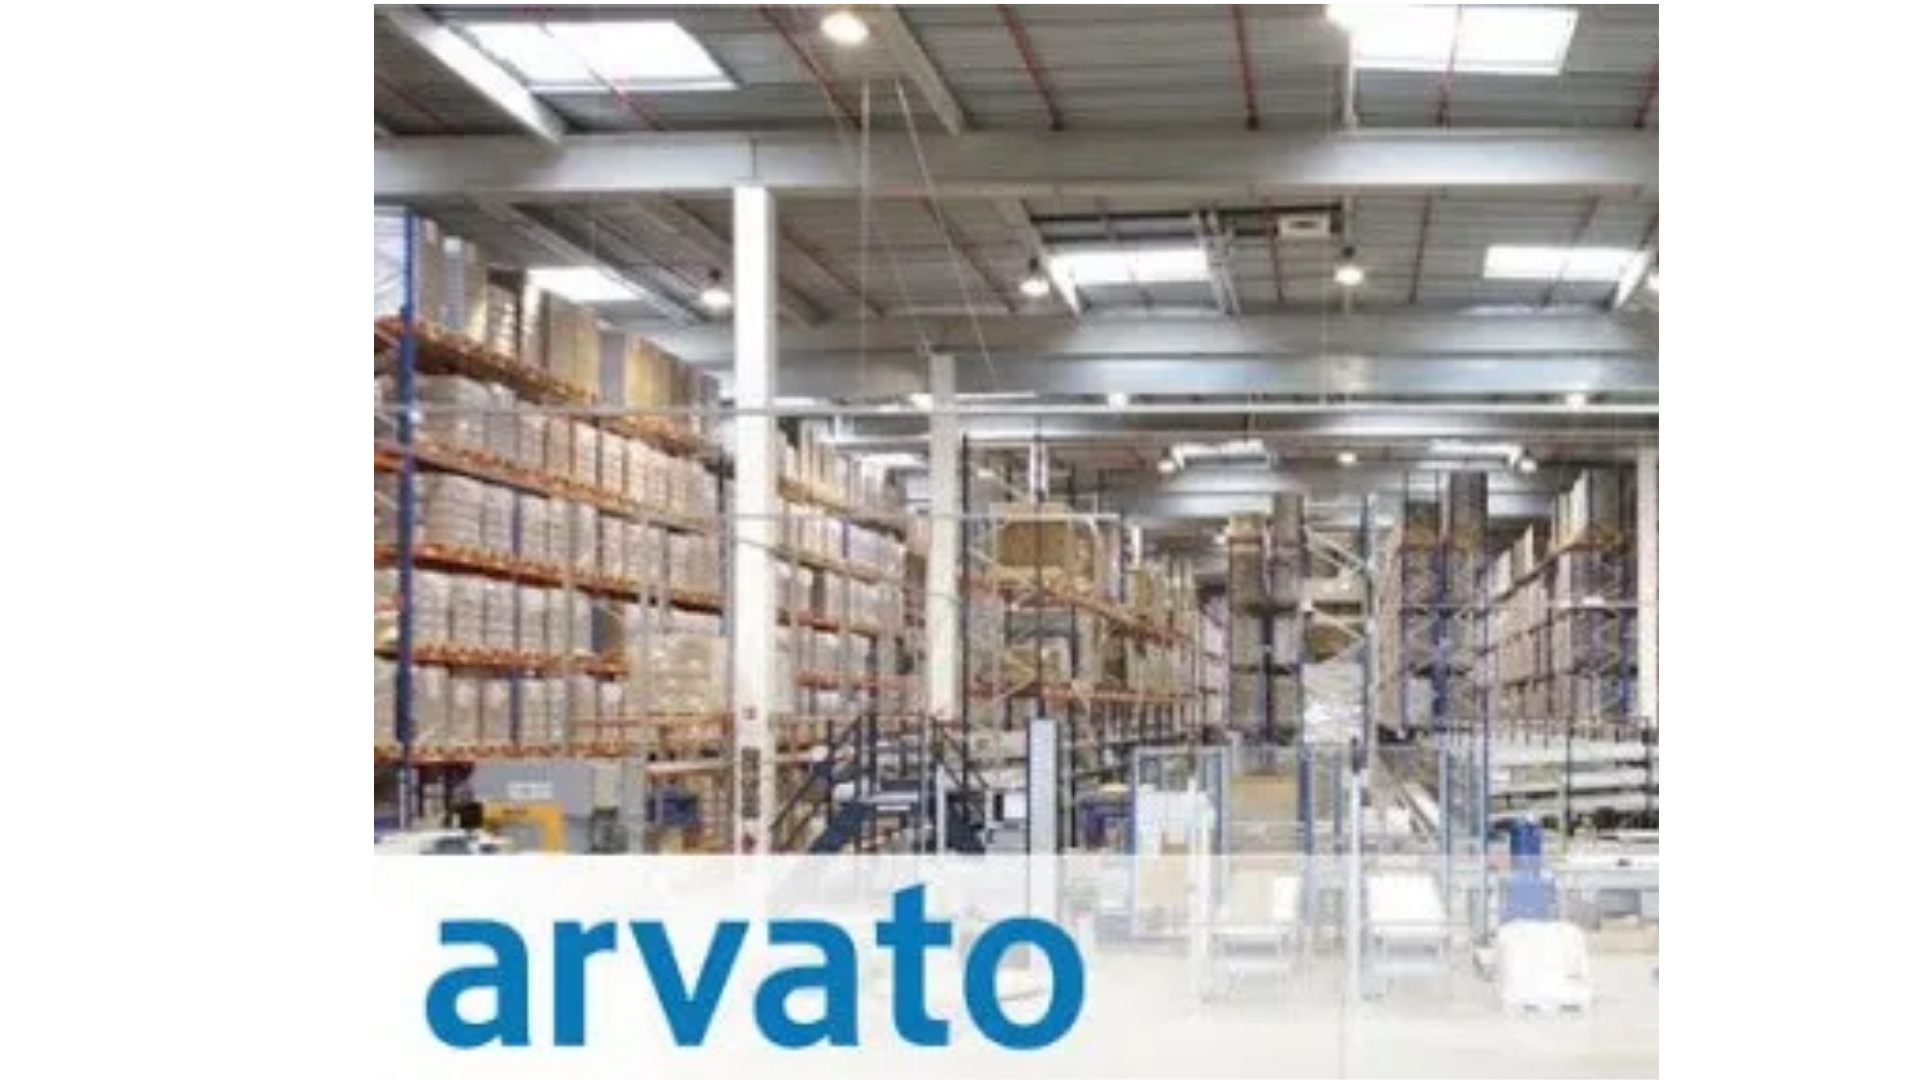 Práca v zahraničí | Universal Consulting ARVATO hľadá zamestnancov logistiky do svojho skladu v Holandsku. Mzda do 19,24€/h. Doprava do/z práce ZDARMA!